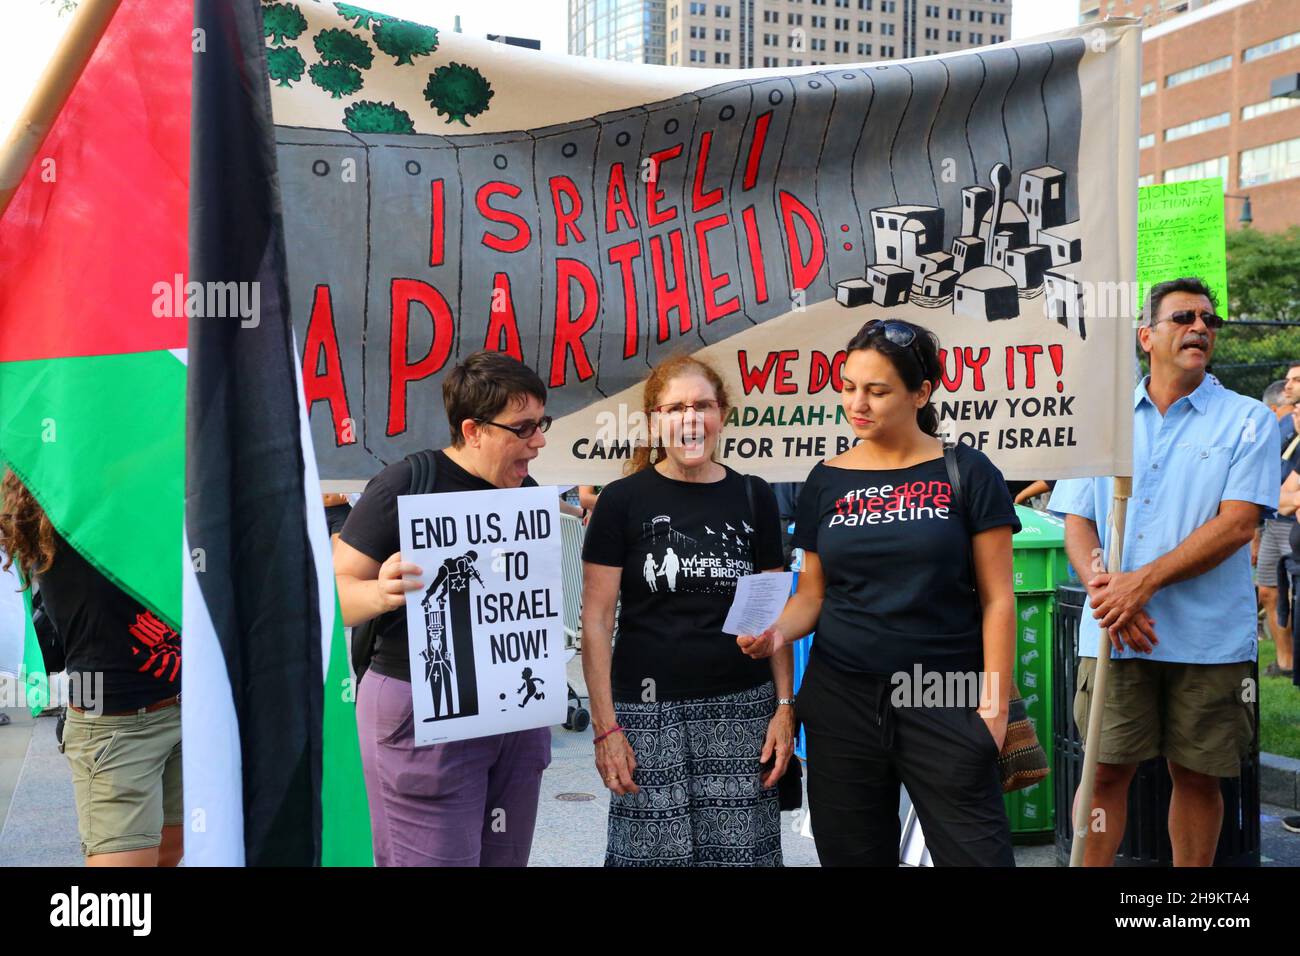 Le persone mostrano bandiere e striscioni, e chiedono di porre fine agli aiuti degli Stati Uniti a Israele alla Giornata Nazionale d'azione per Gaza organizzata da Adalah-NY, NYC, 24 luglio 2014 Foto Stock